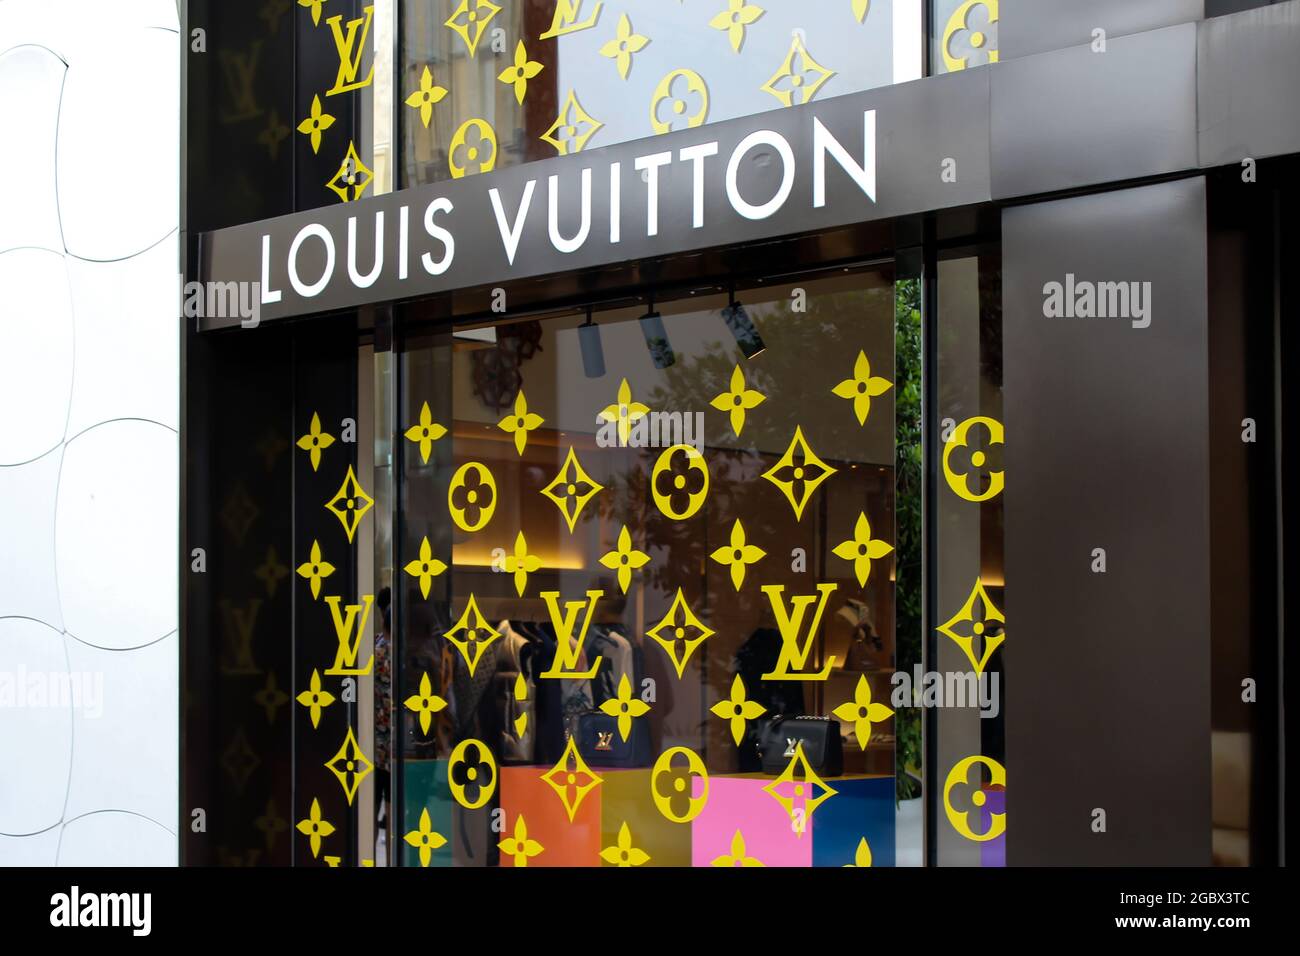 Fassade des Louis Vuitton Stores außerhalb des Miami Design District in Miami, Florida. Luxuriöses Einkaufszentrum und Geschäft. Stockfoto